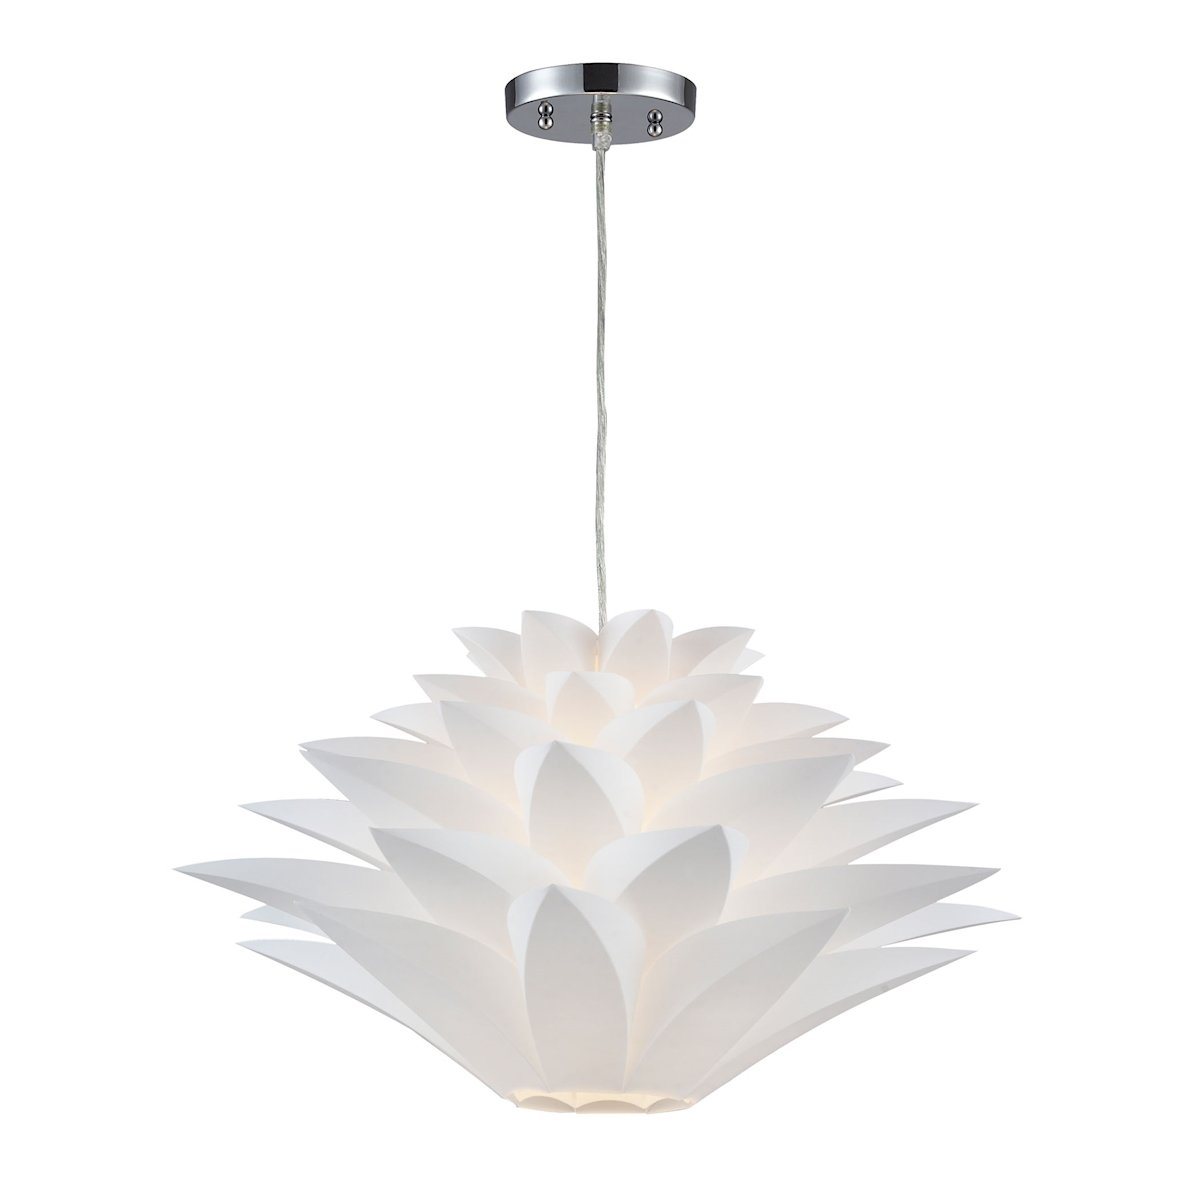 Inshes 1 Light Mini Pendant Lamp In White Ceiling Sterling 